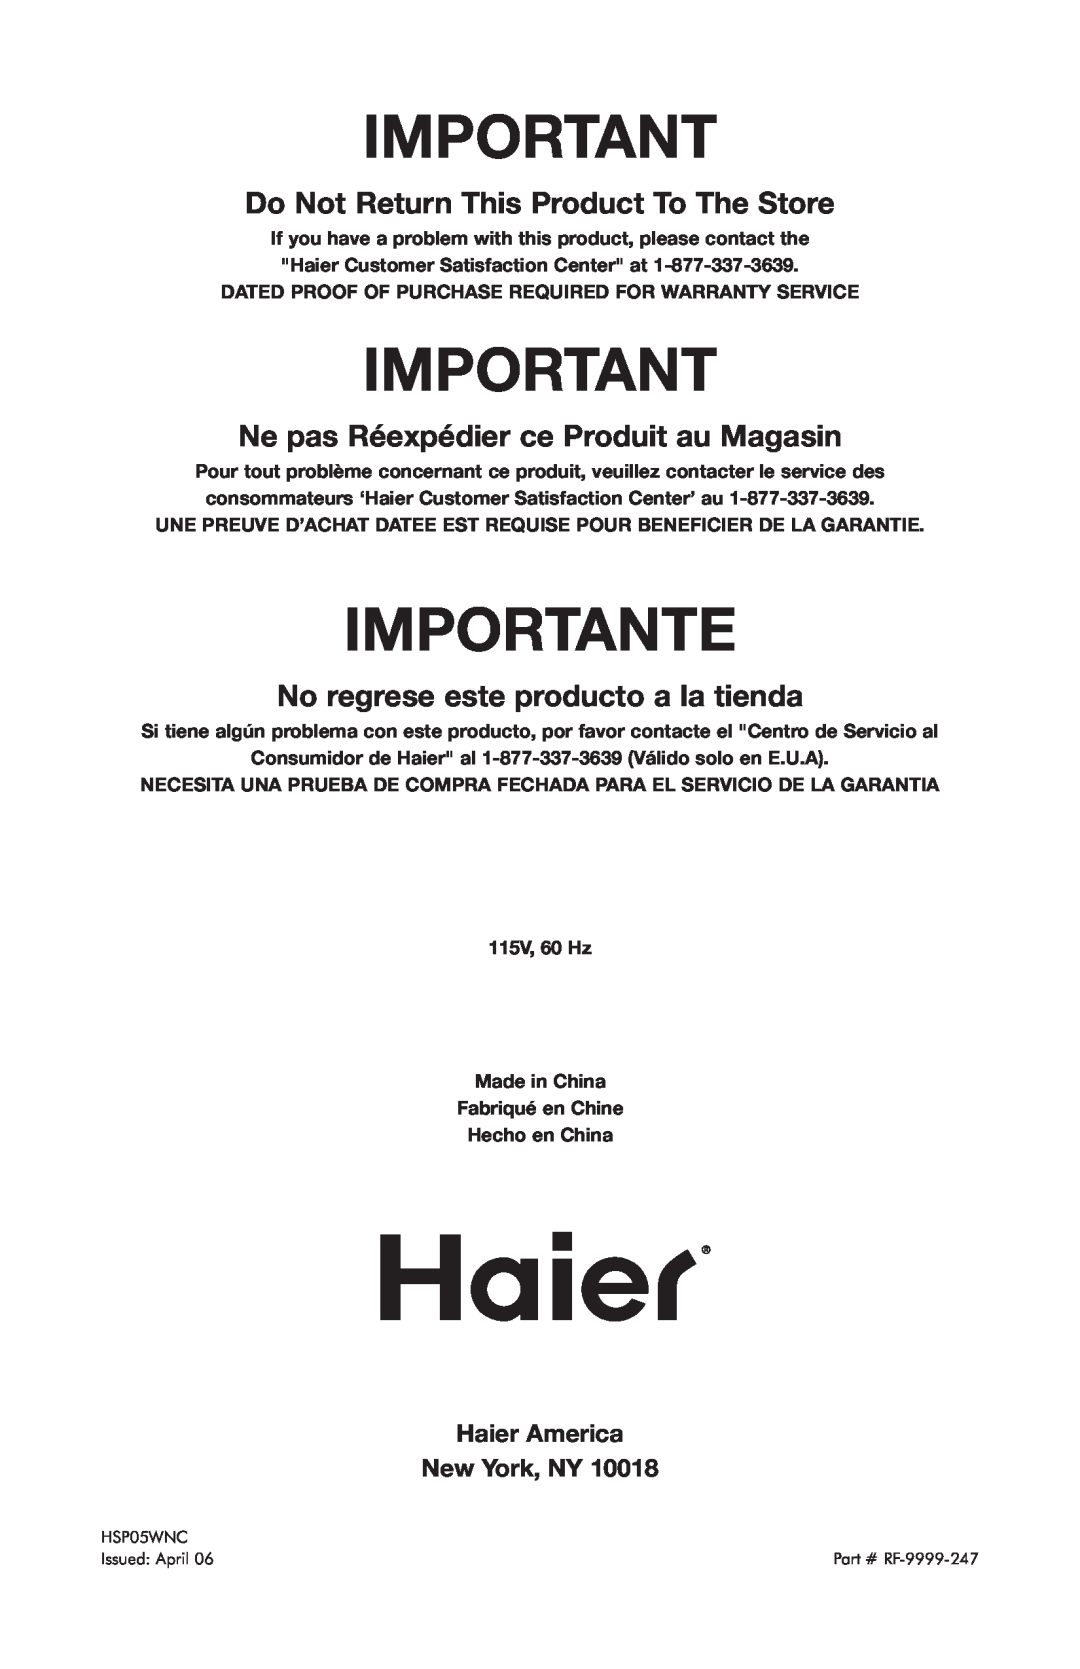 Haier HSP05WNC user manual Importante, Do Not Return This Product To The Store, Ne pas Réexpédier ce Produit au Magasin 